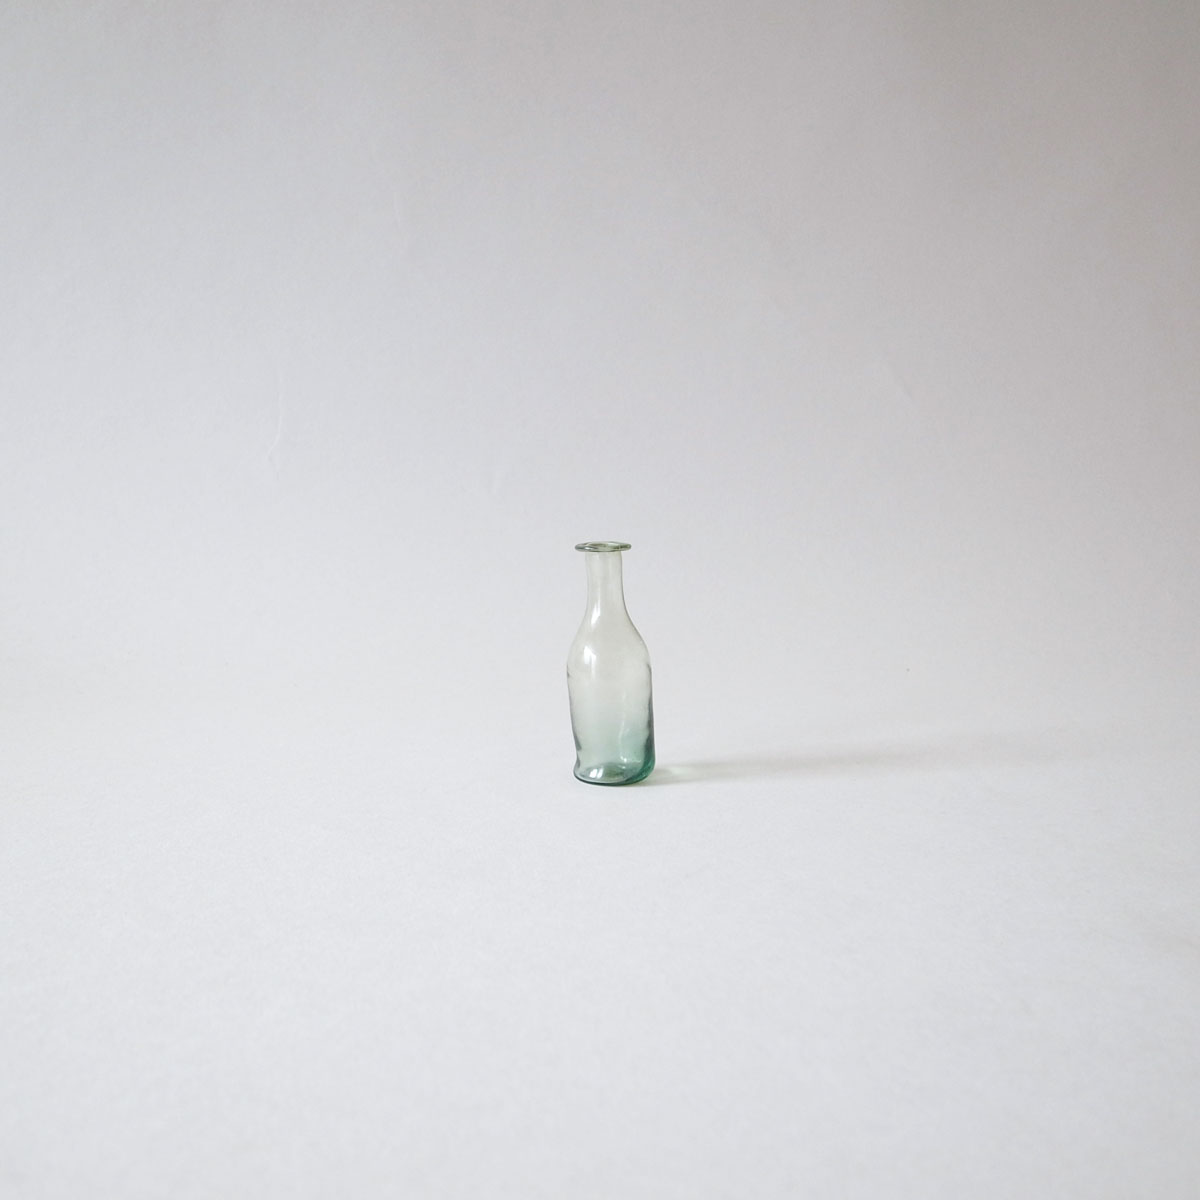 20世紀初頭 チェコスロバキア製 ガラス哺乳瓶 ボトル瓶 /古道具/工芸/東欧